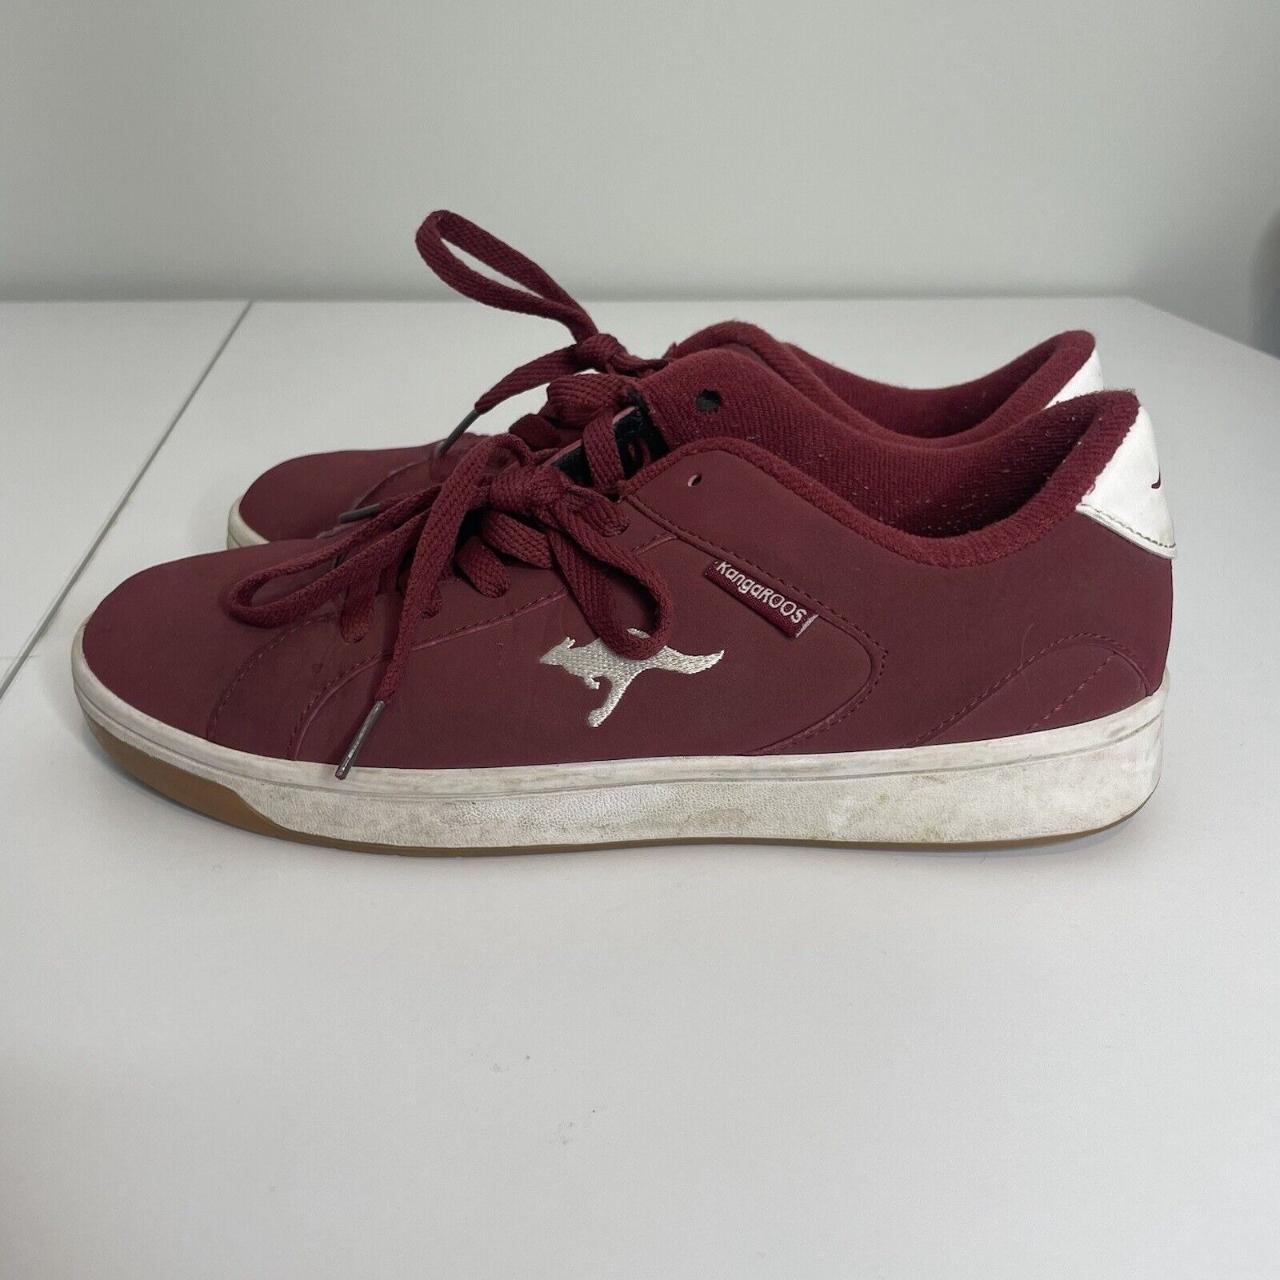 Product Image 4 - Mens Maroon KangaROOS Sneakers Size